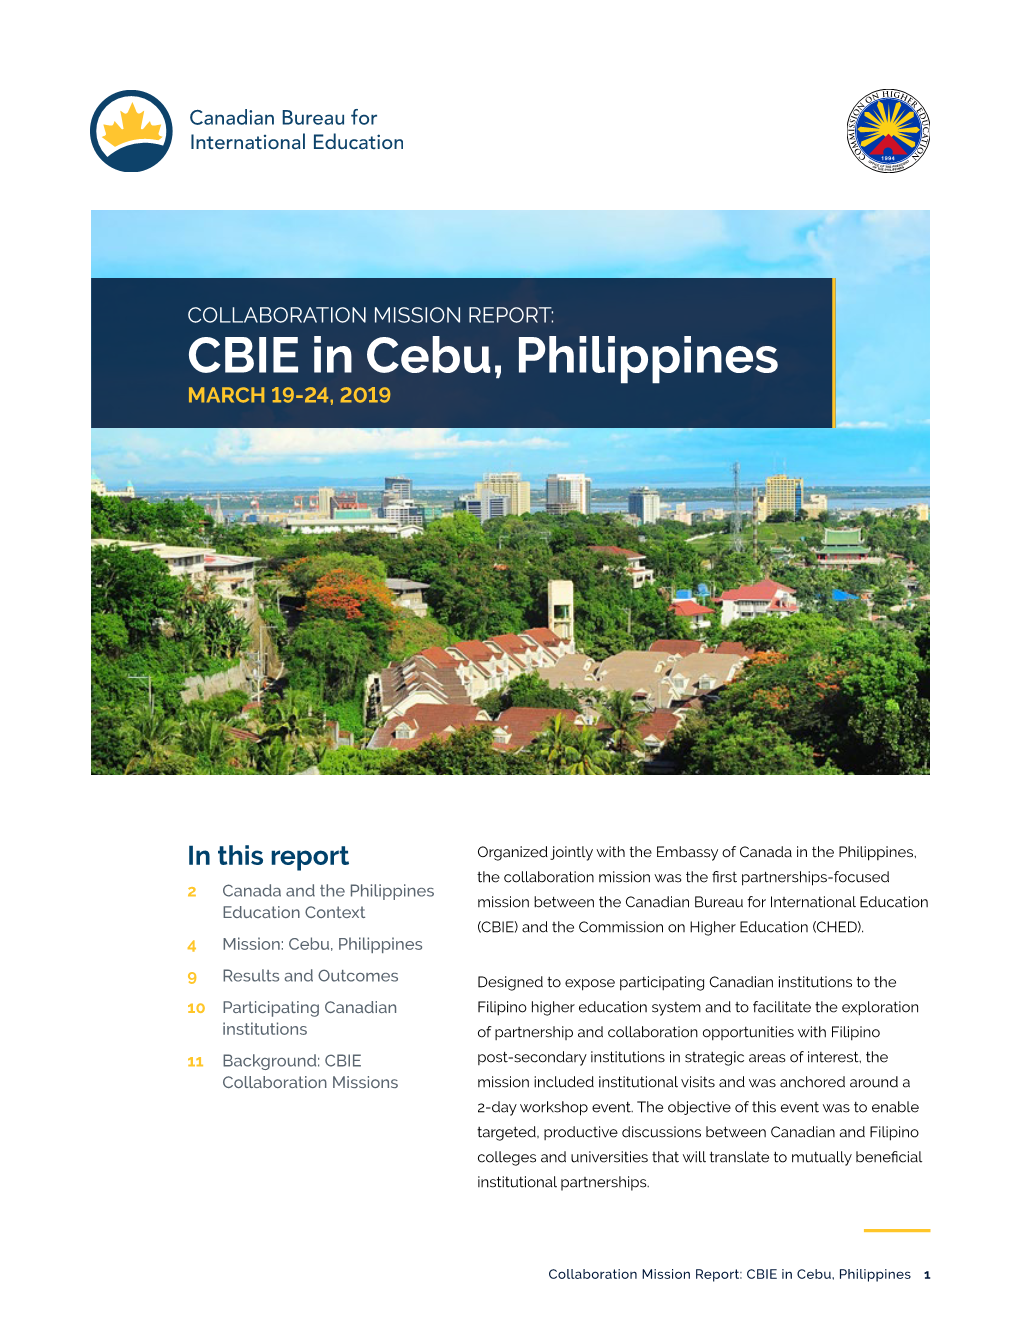 CBIE in Cebu, Philippines MARCH 19-24, 2019 9